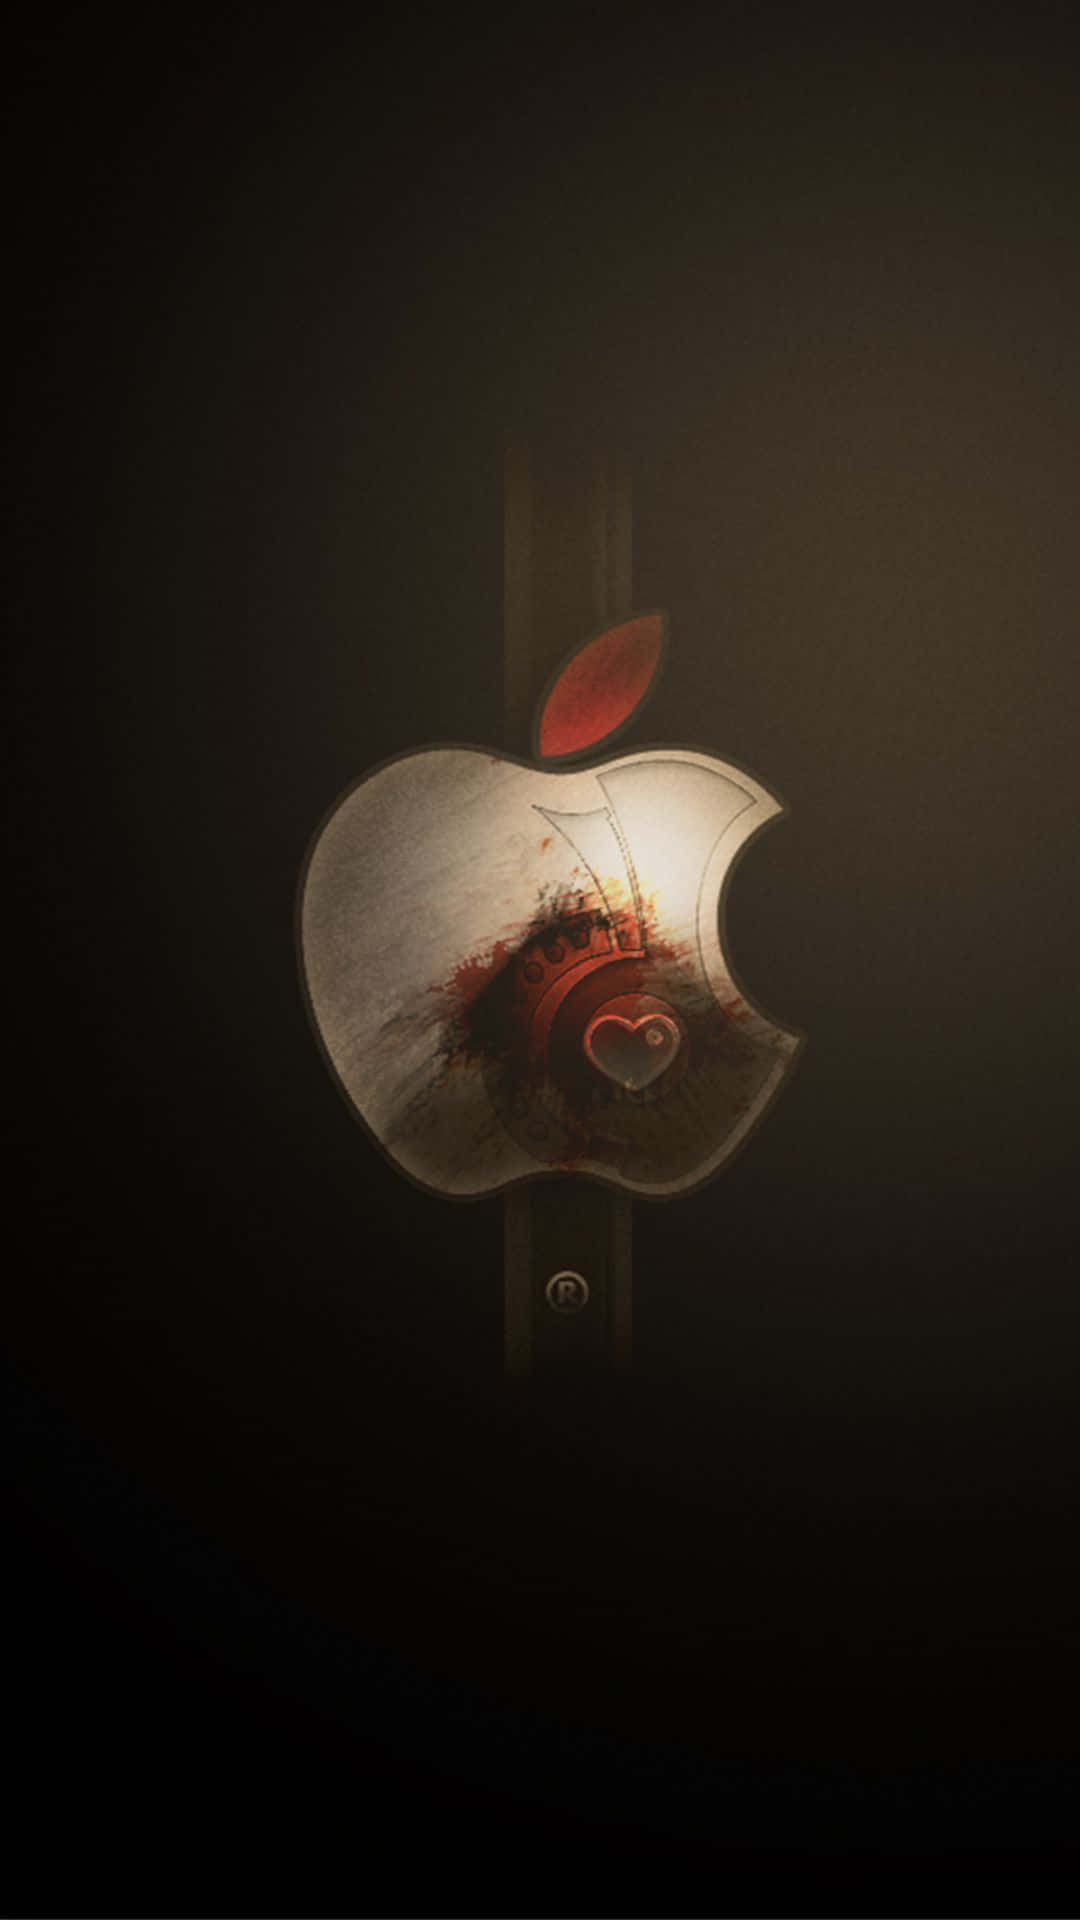 Denkarakteristiska Apple Logotypen På En Iphone X. Wallpaper